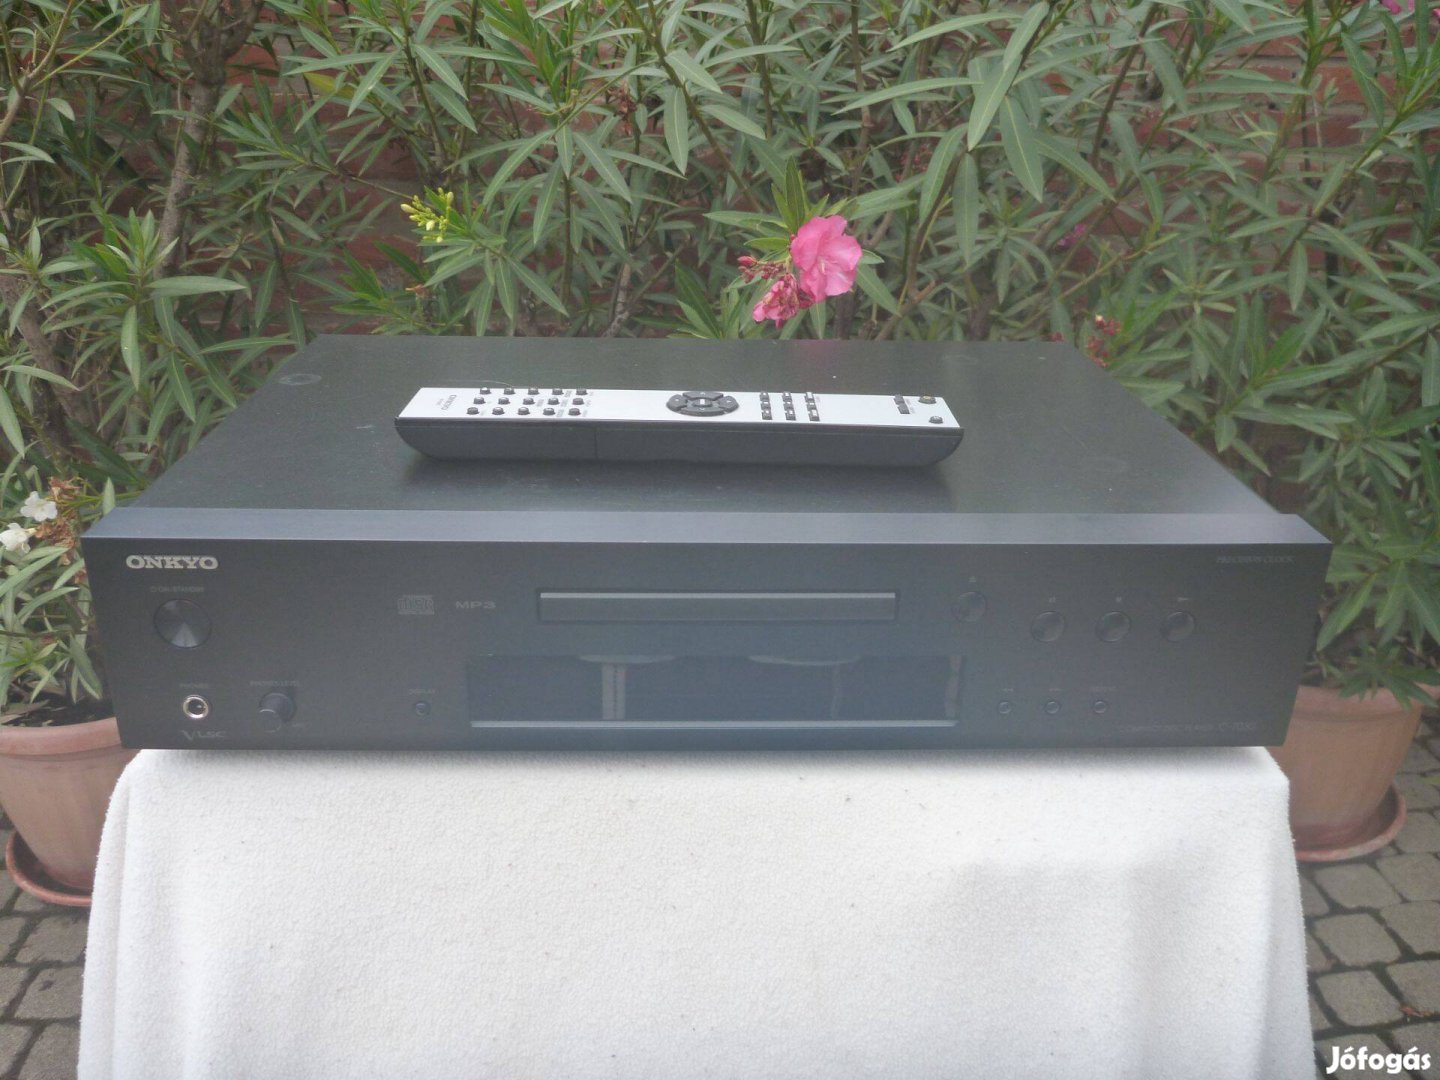 Onkyo C-7030 felsőkategóriás CD lejátszó gyári távirányítóval